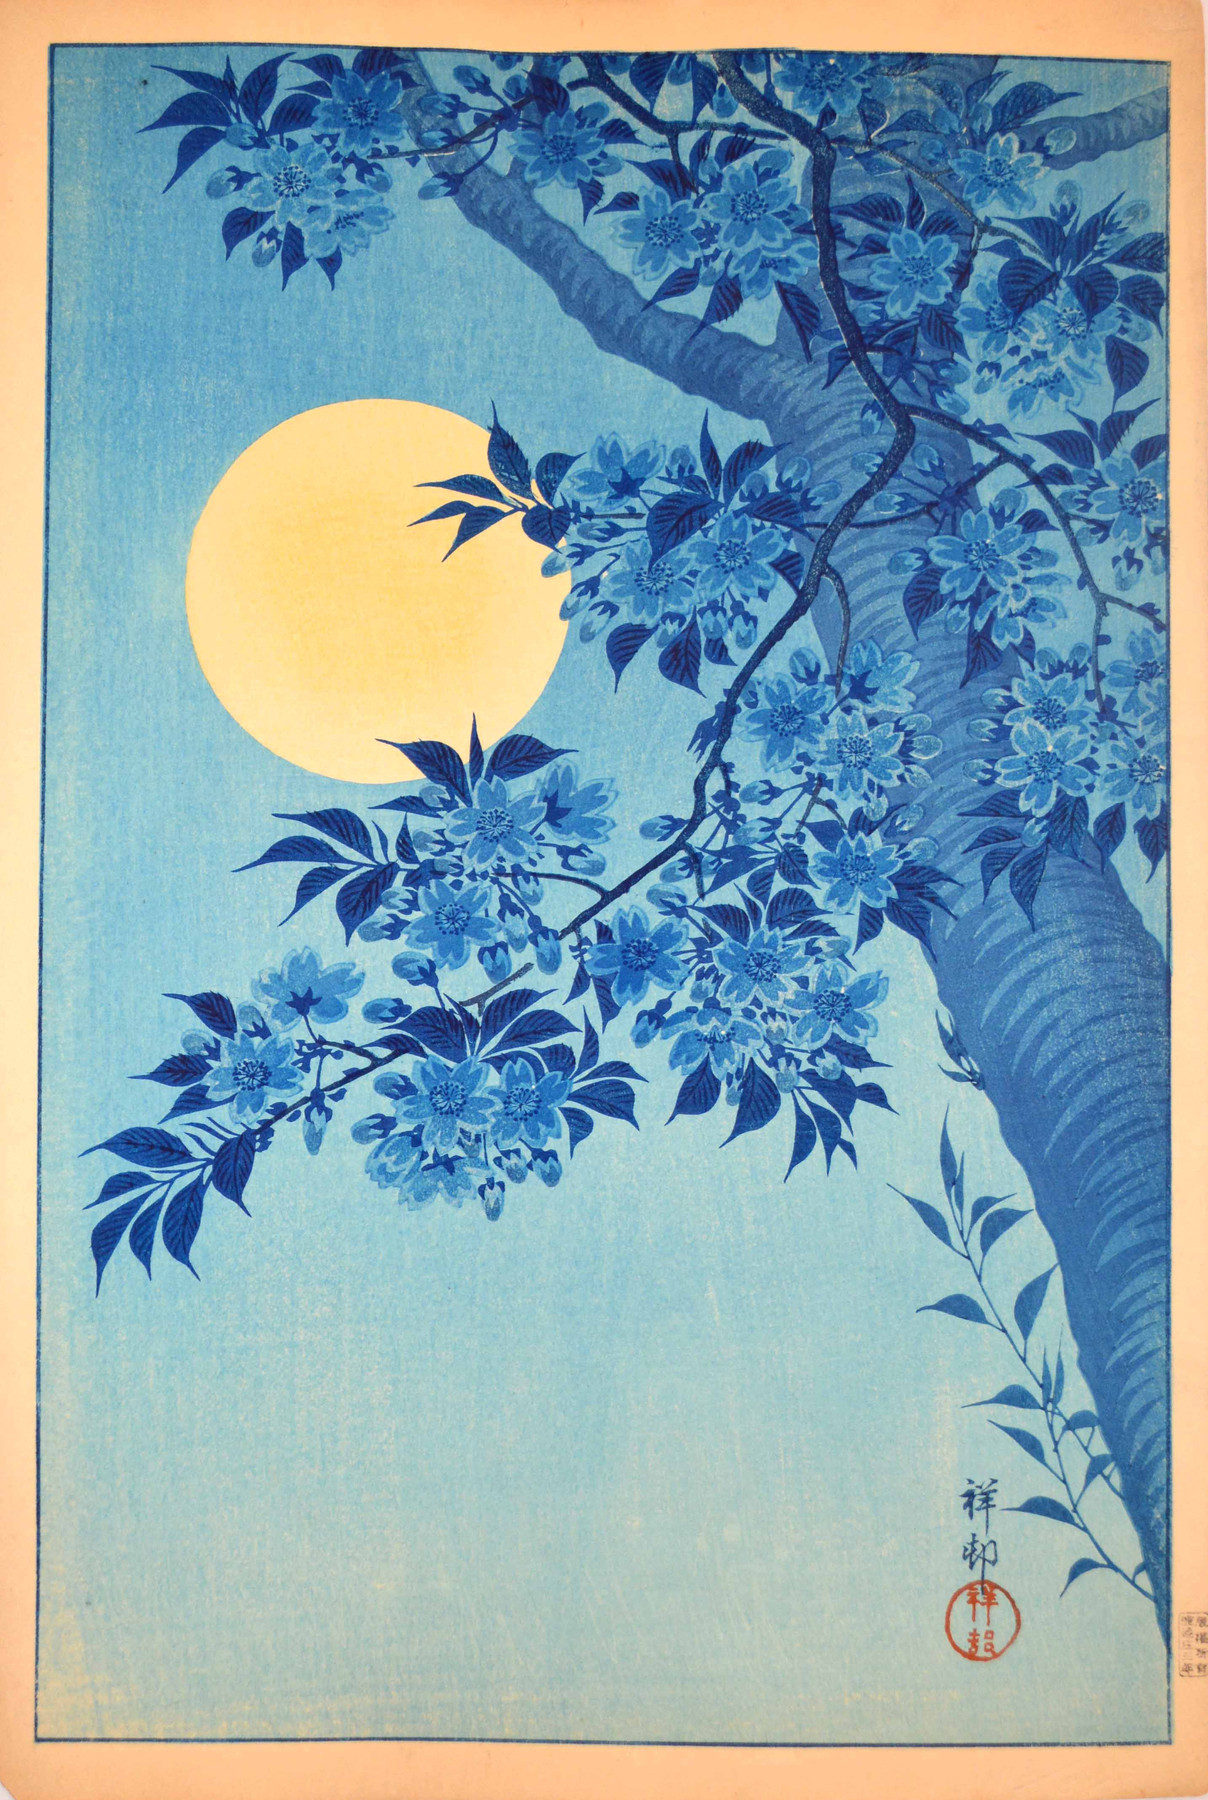 Fiori di ciliegio e luna piena by Ohara Koson - 1932 - 26 x 39 cm collezione privata